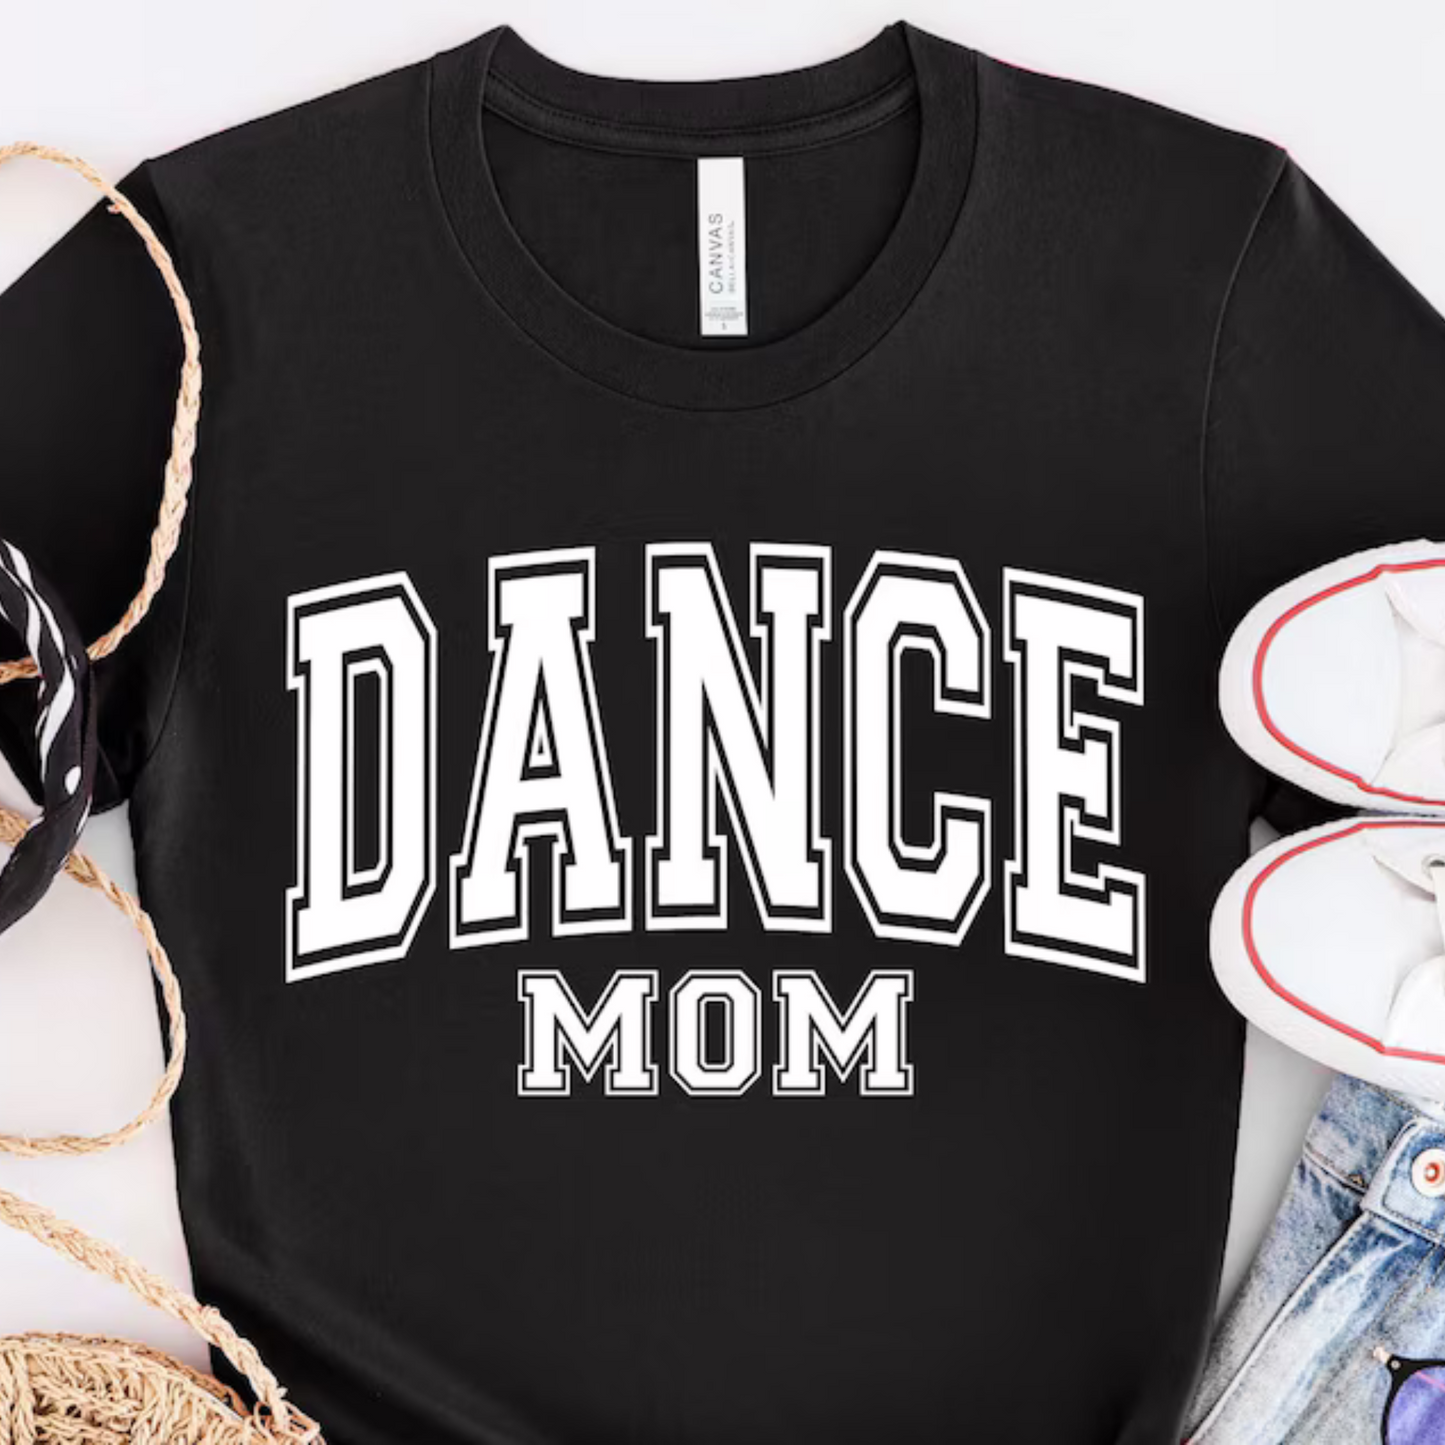 Tanzmutter - Support-Shirt für die Tanzveranstaltung